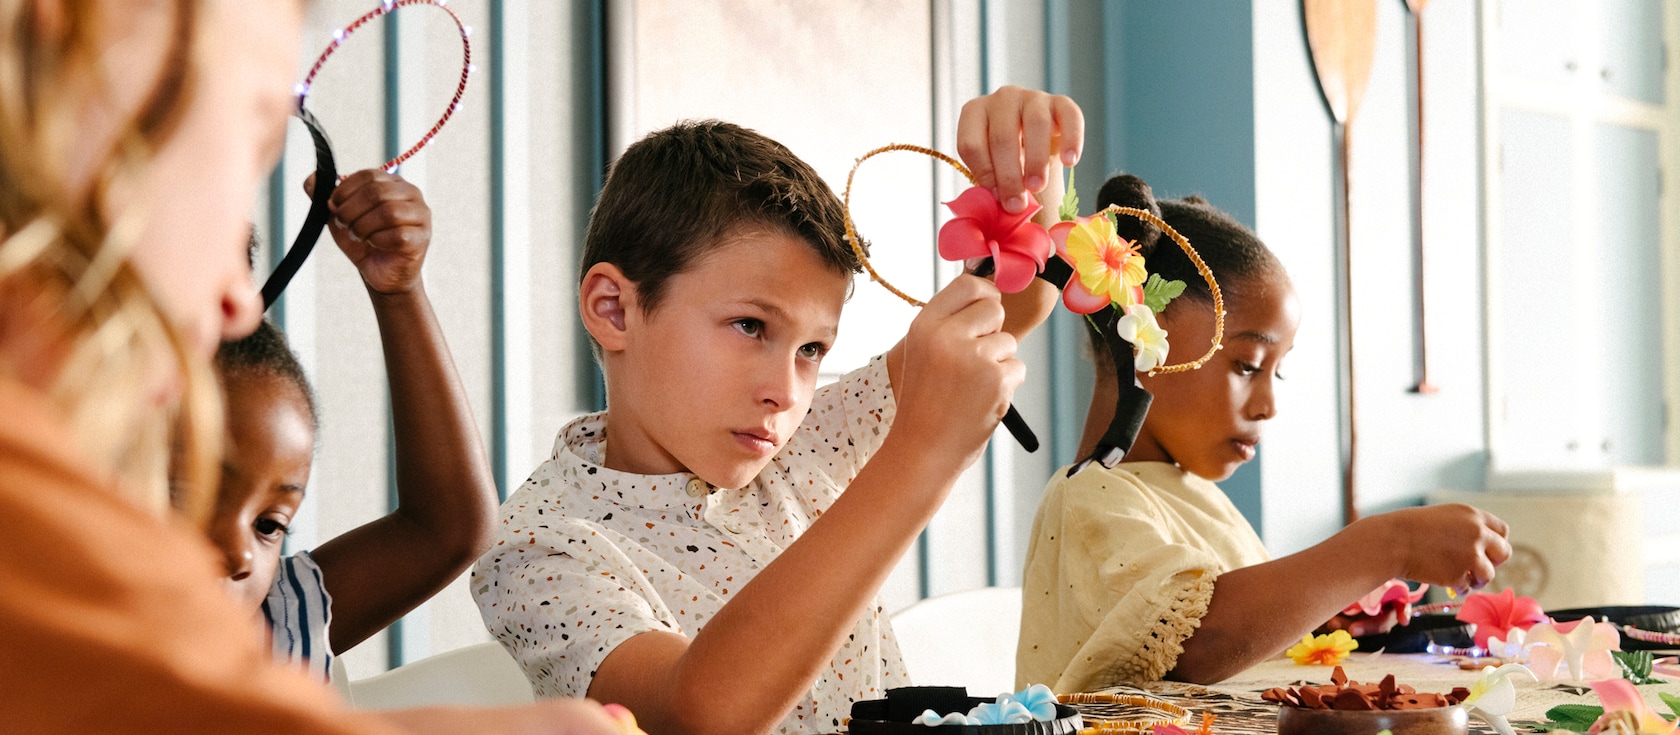 テーブルに座り、花と他の材料を組み合わせてミッキーの耳の形をしたヘッドバンドを作っている子供たち